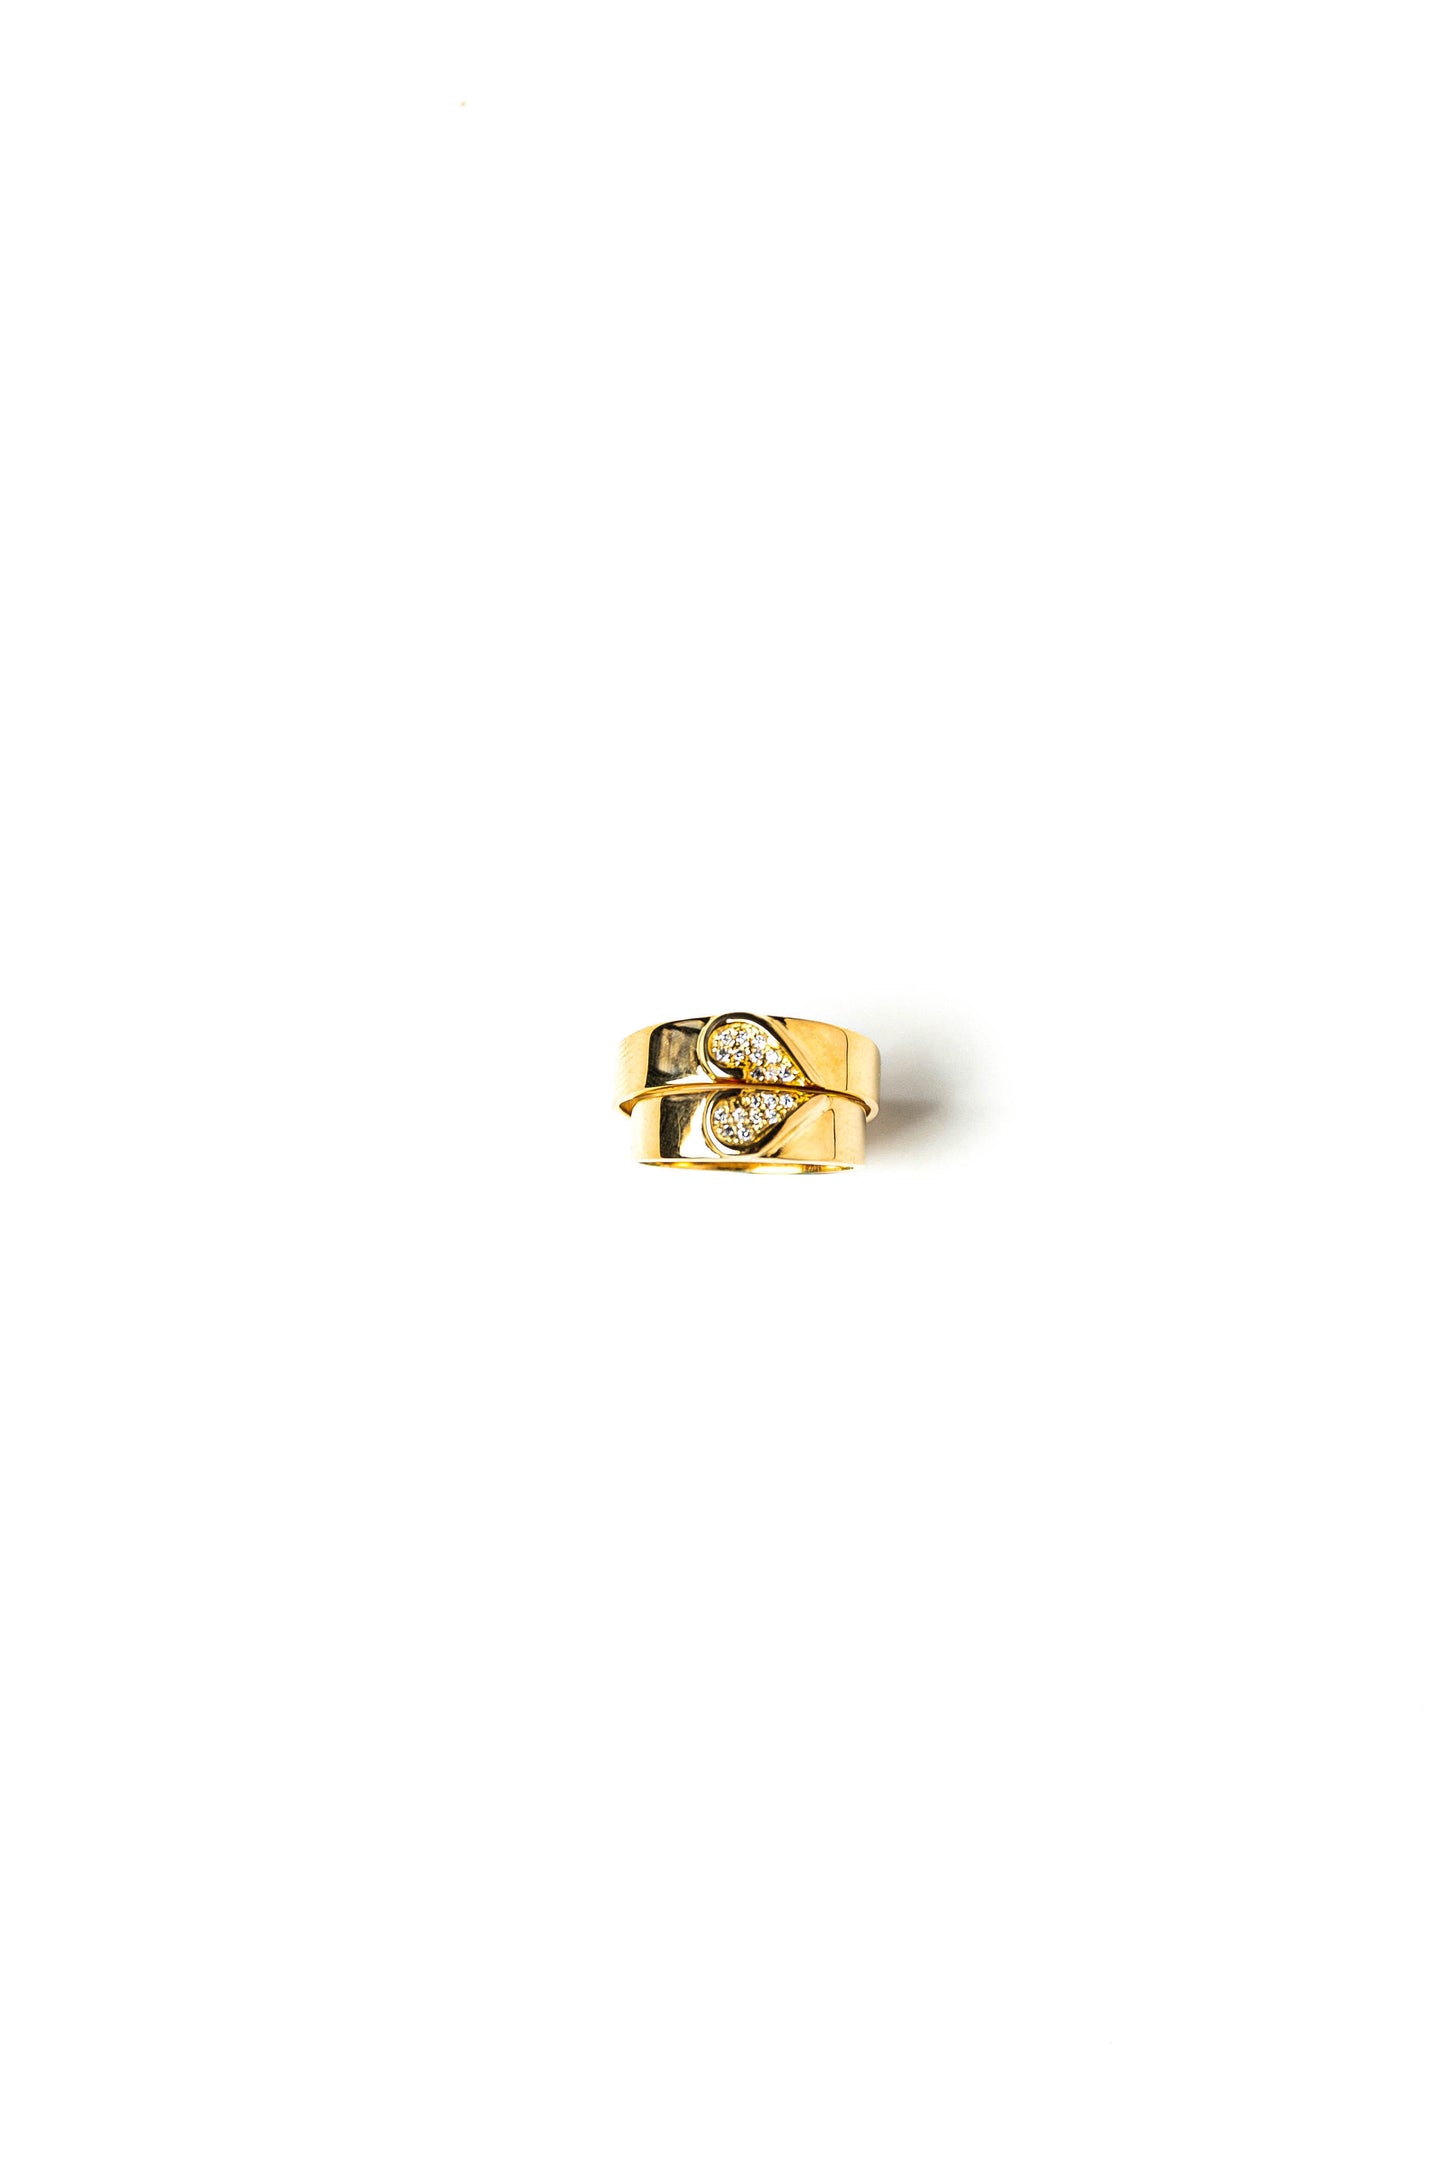 Customize Wedding/Couple Ring